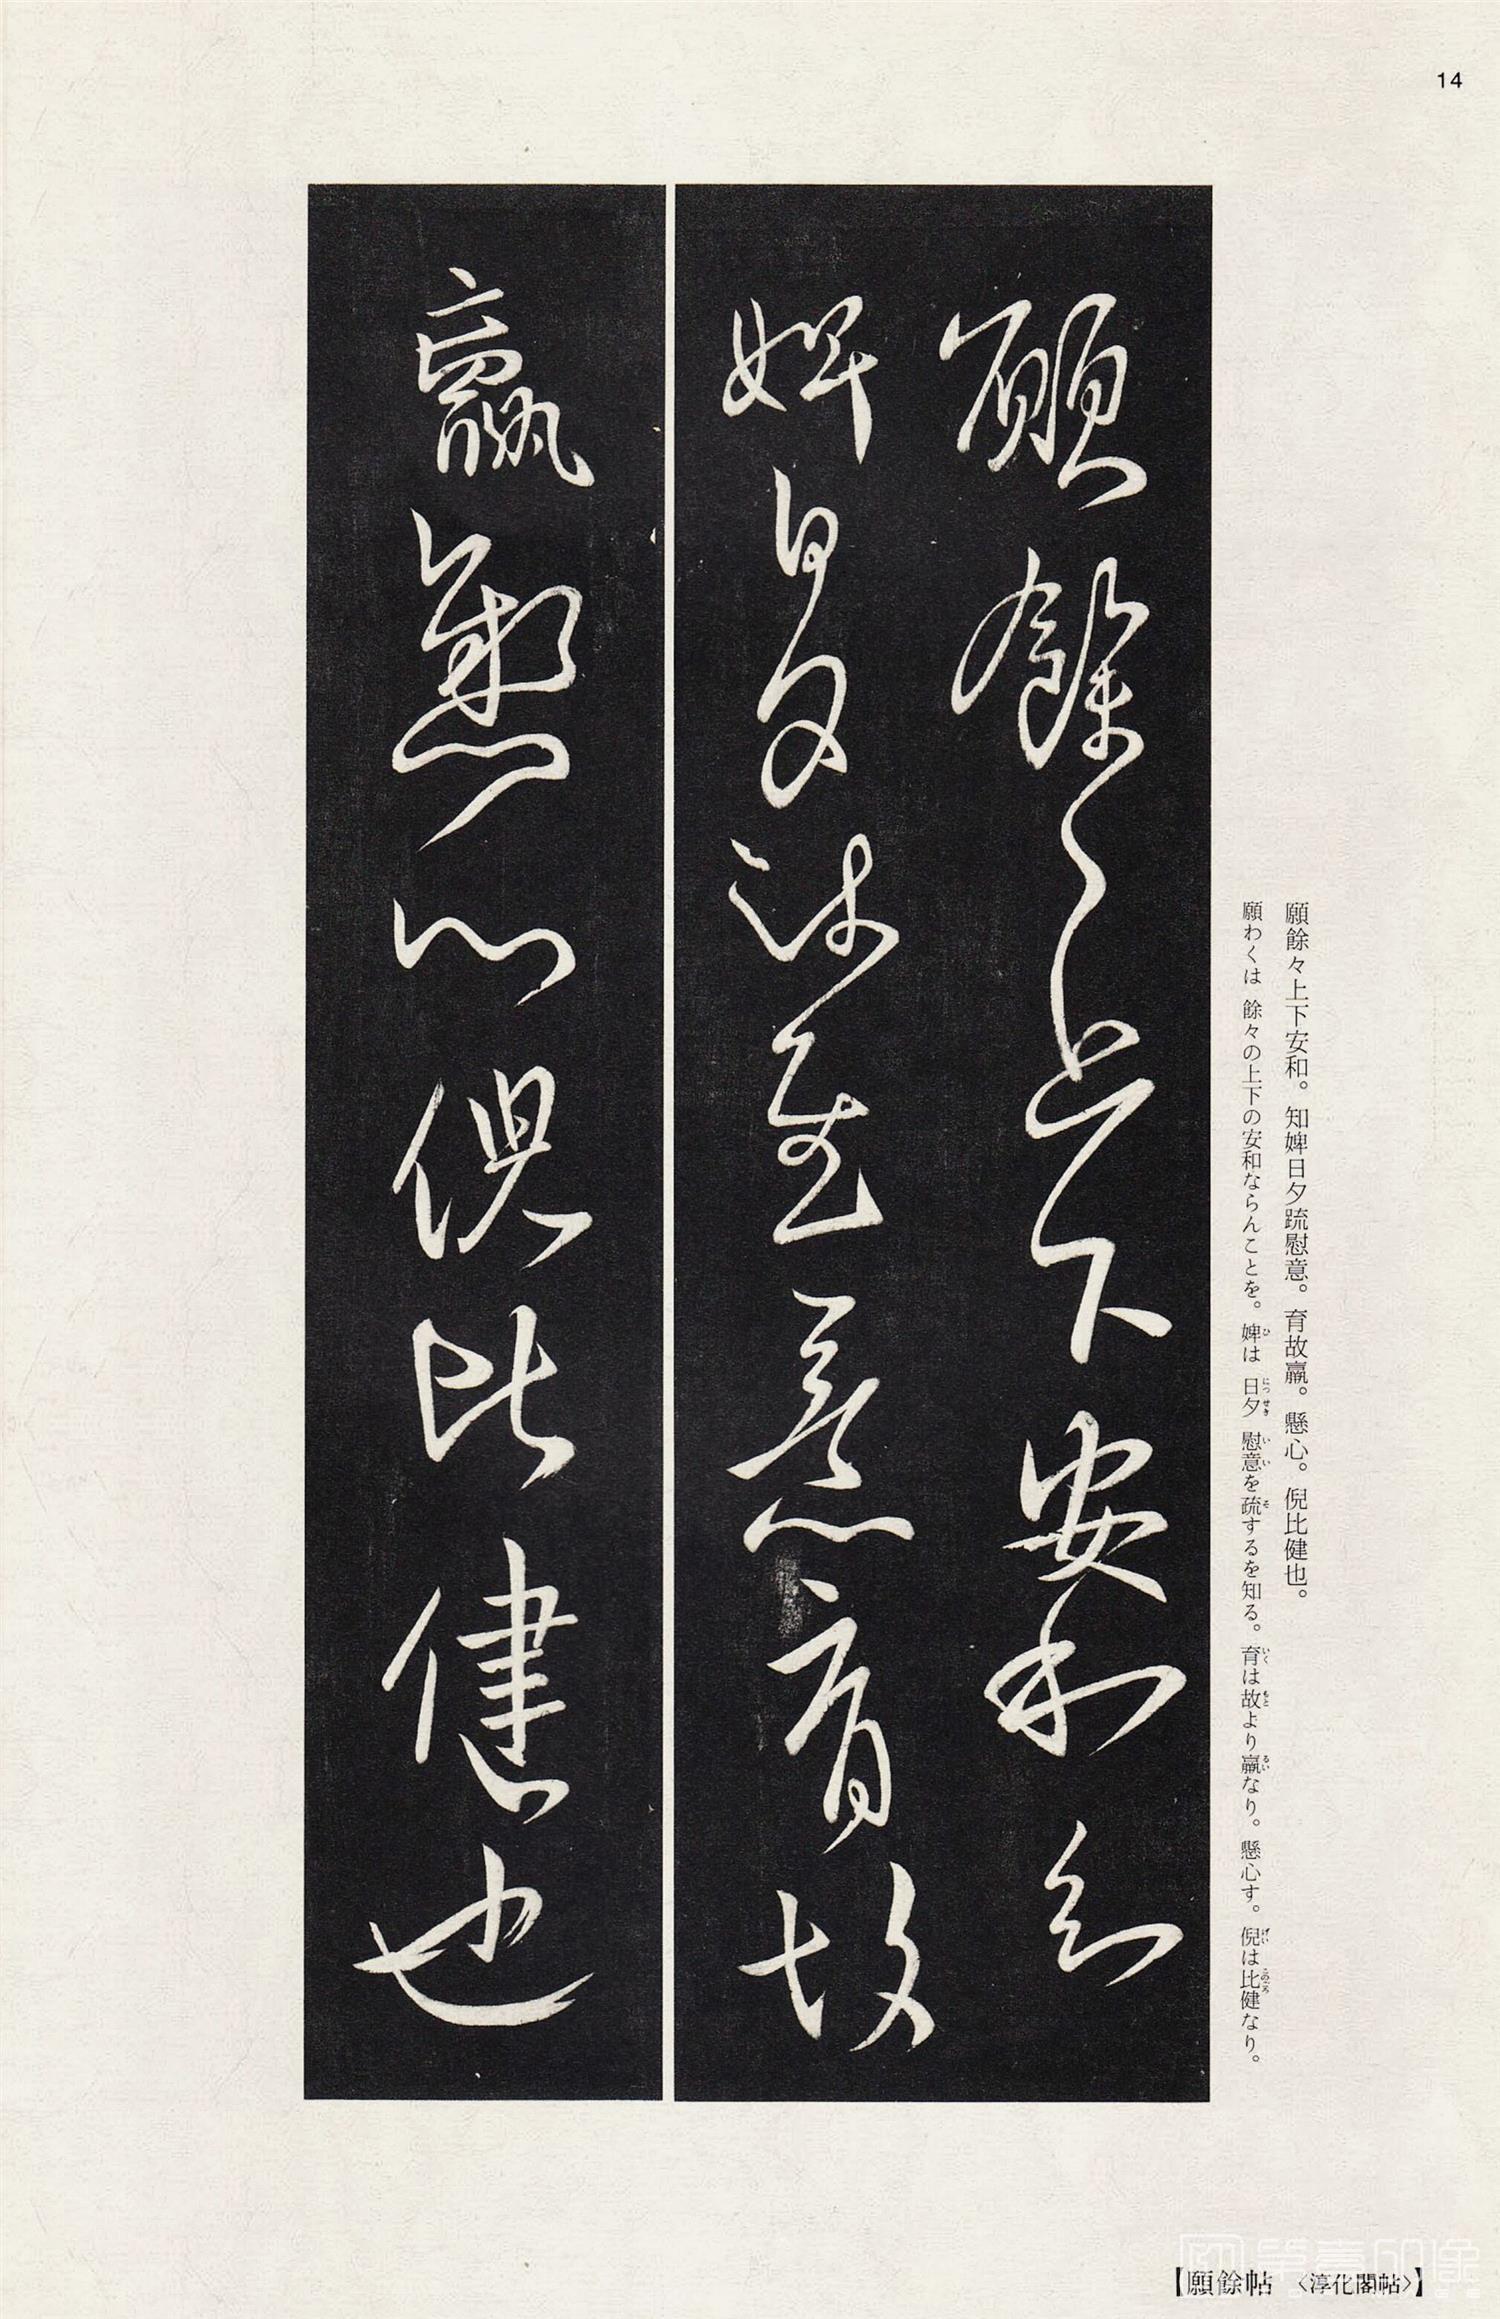 中国法书选(18)王献之尺牍集- (14)-Wang Xianzhi-书法作品-第壹印像